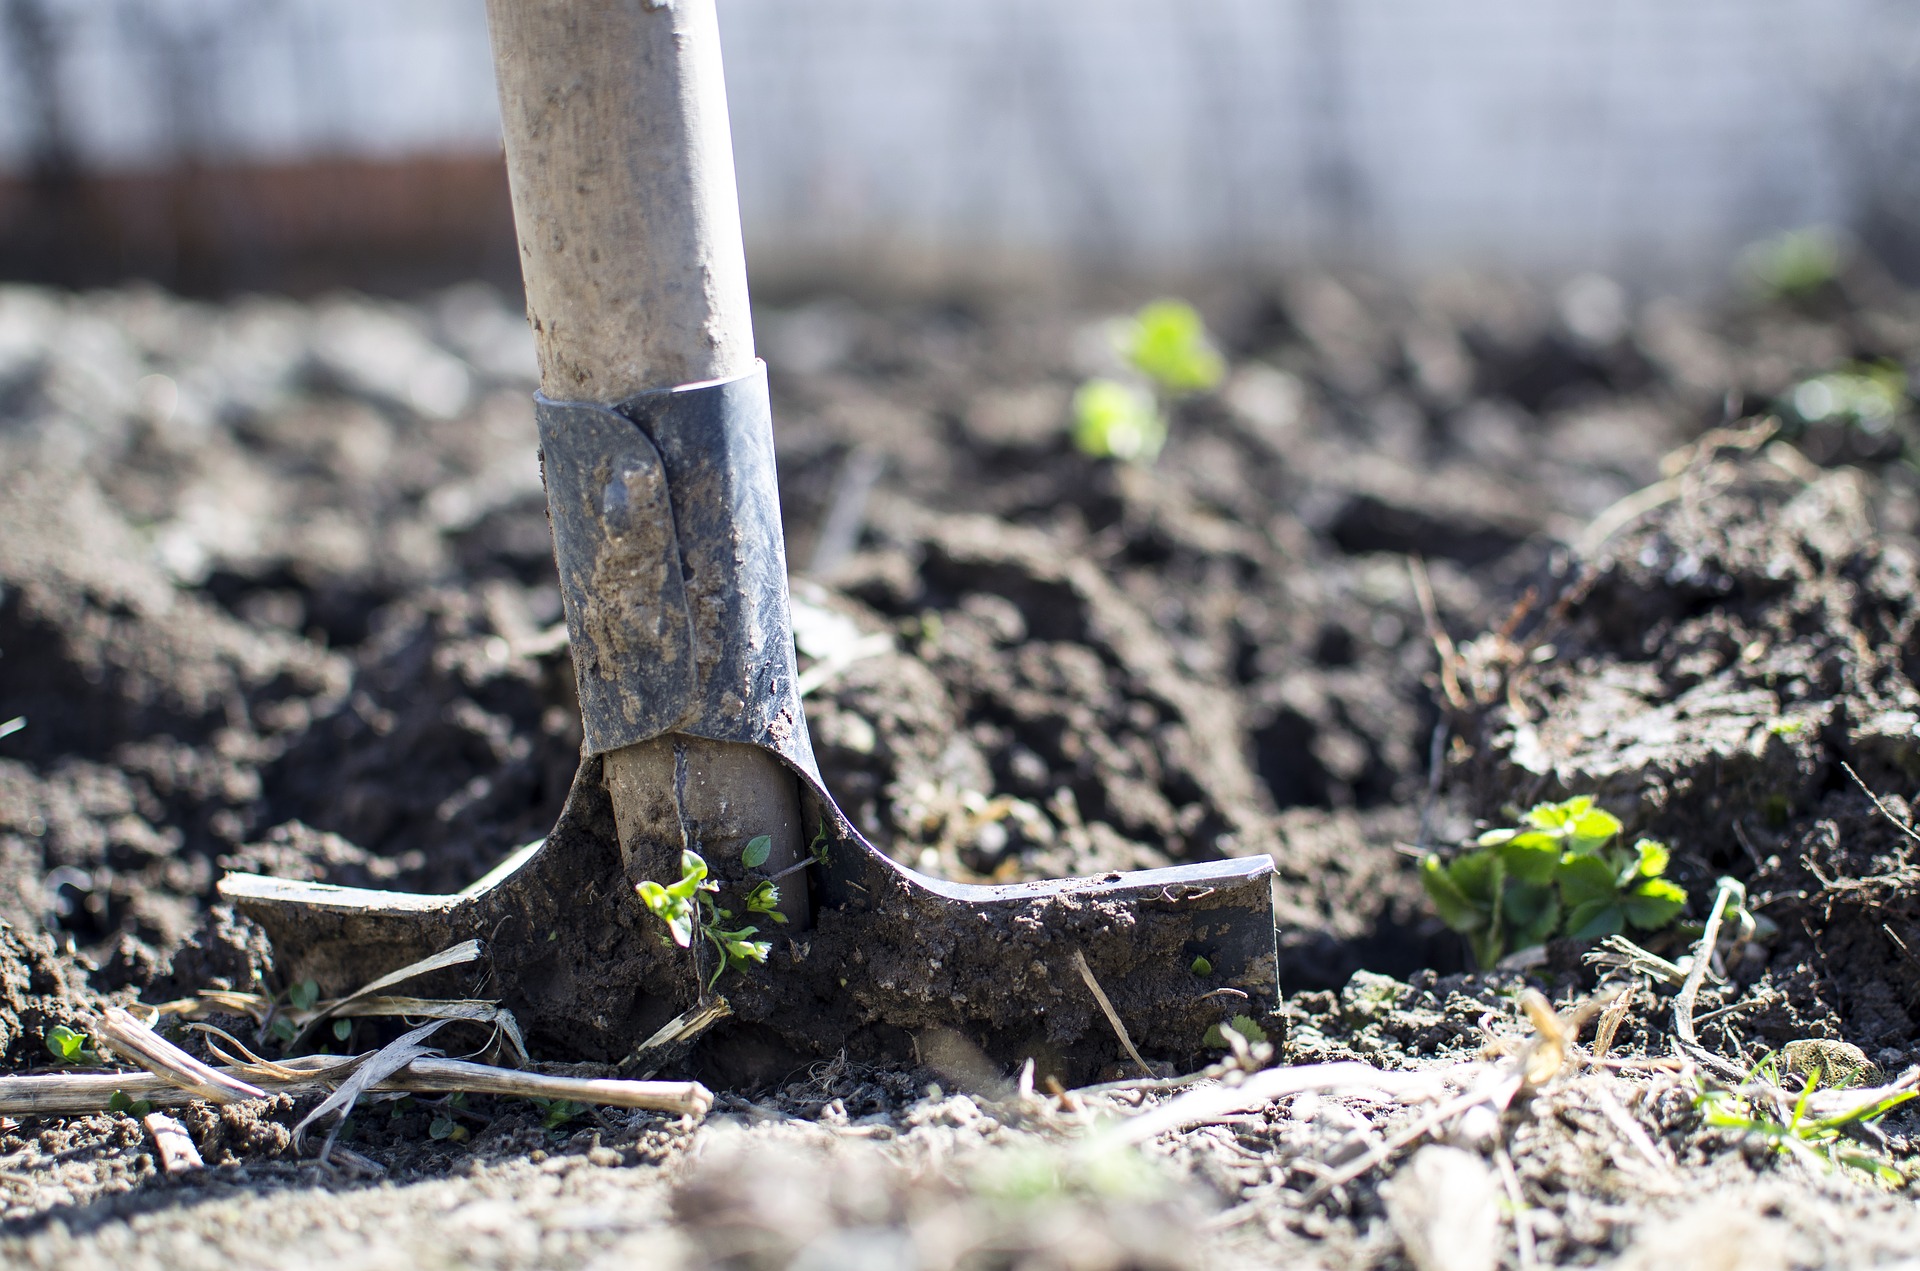 plan your vegetable garden, then dig in